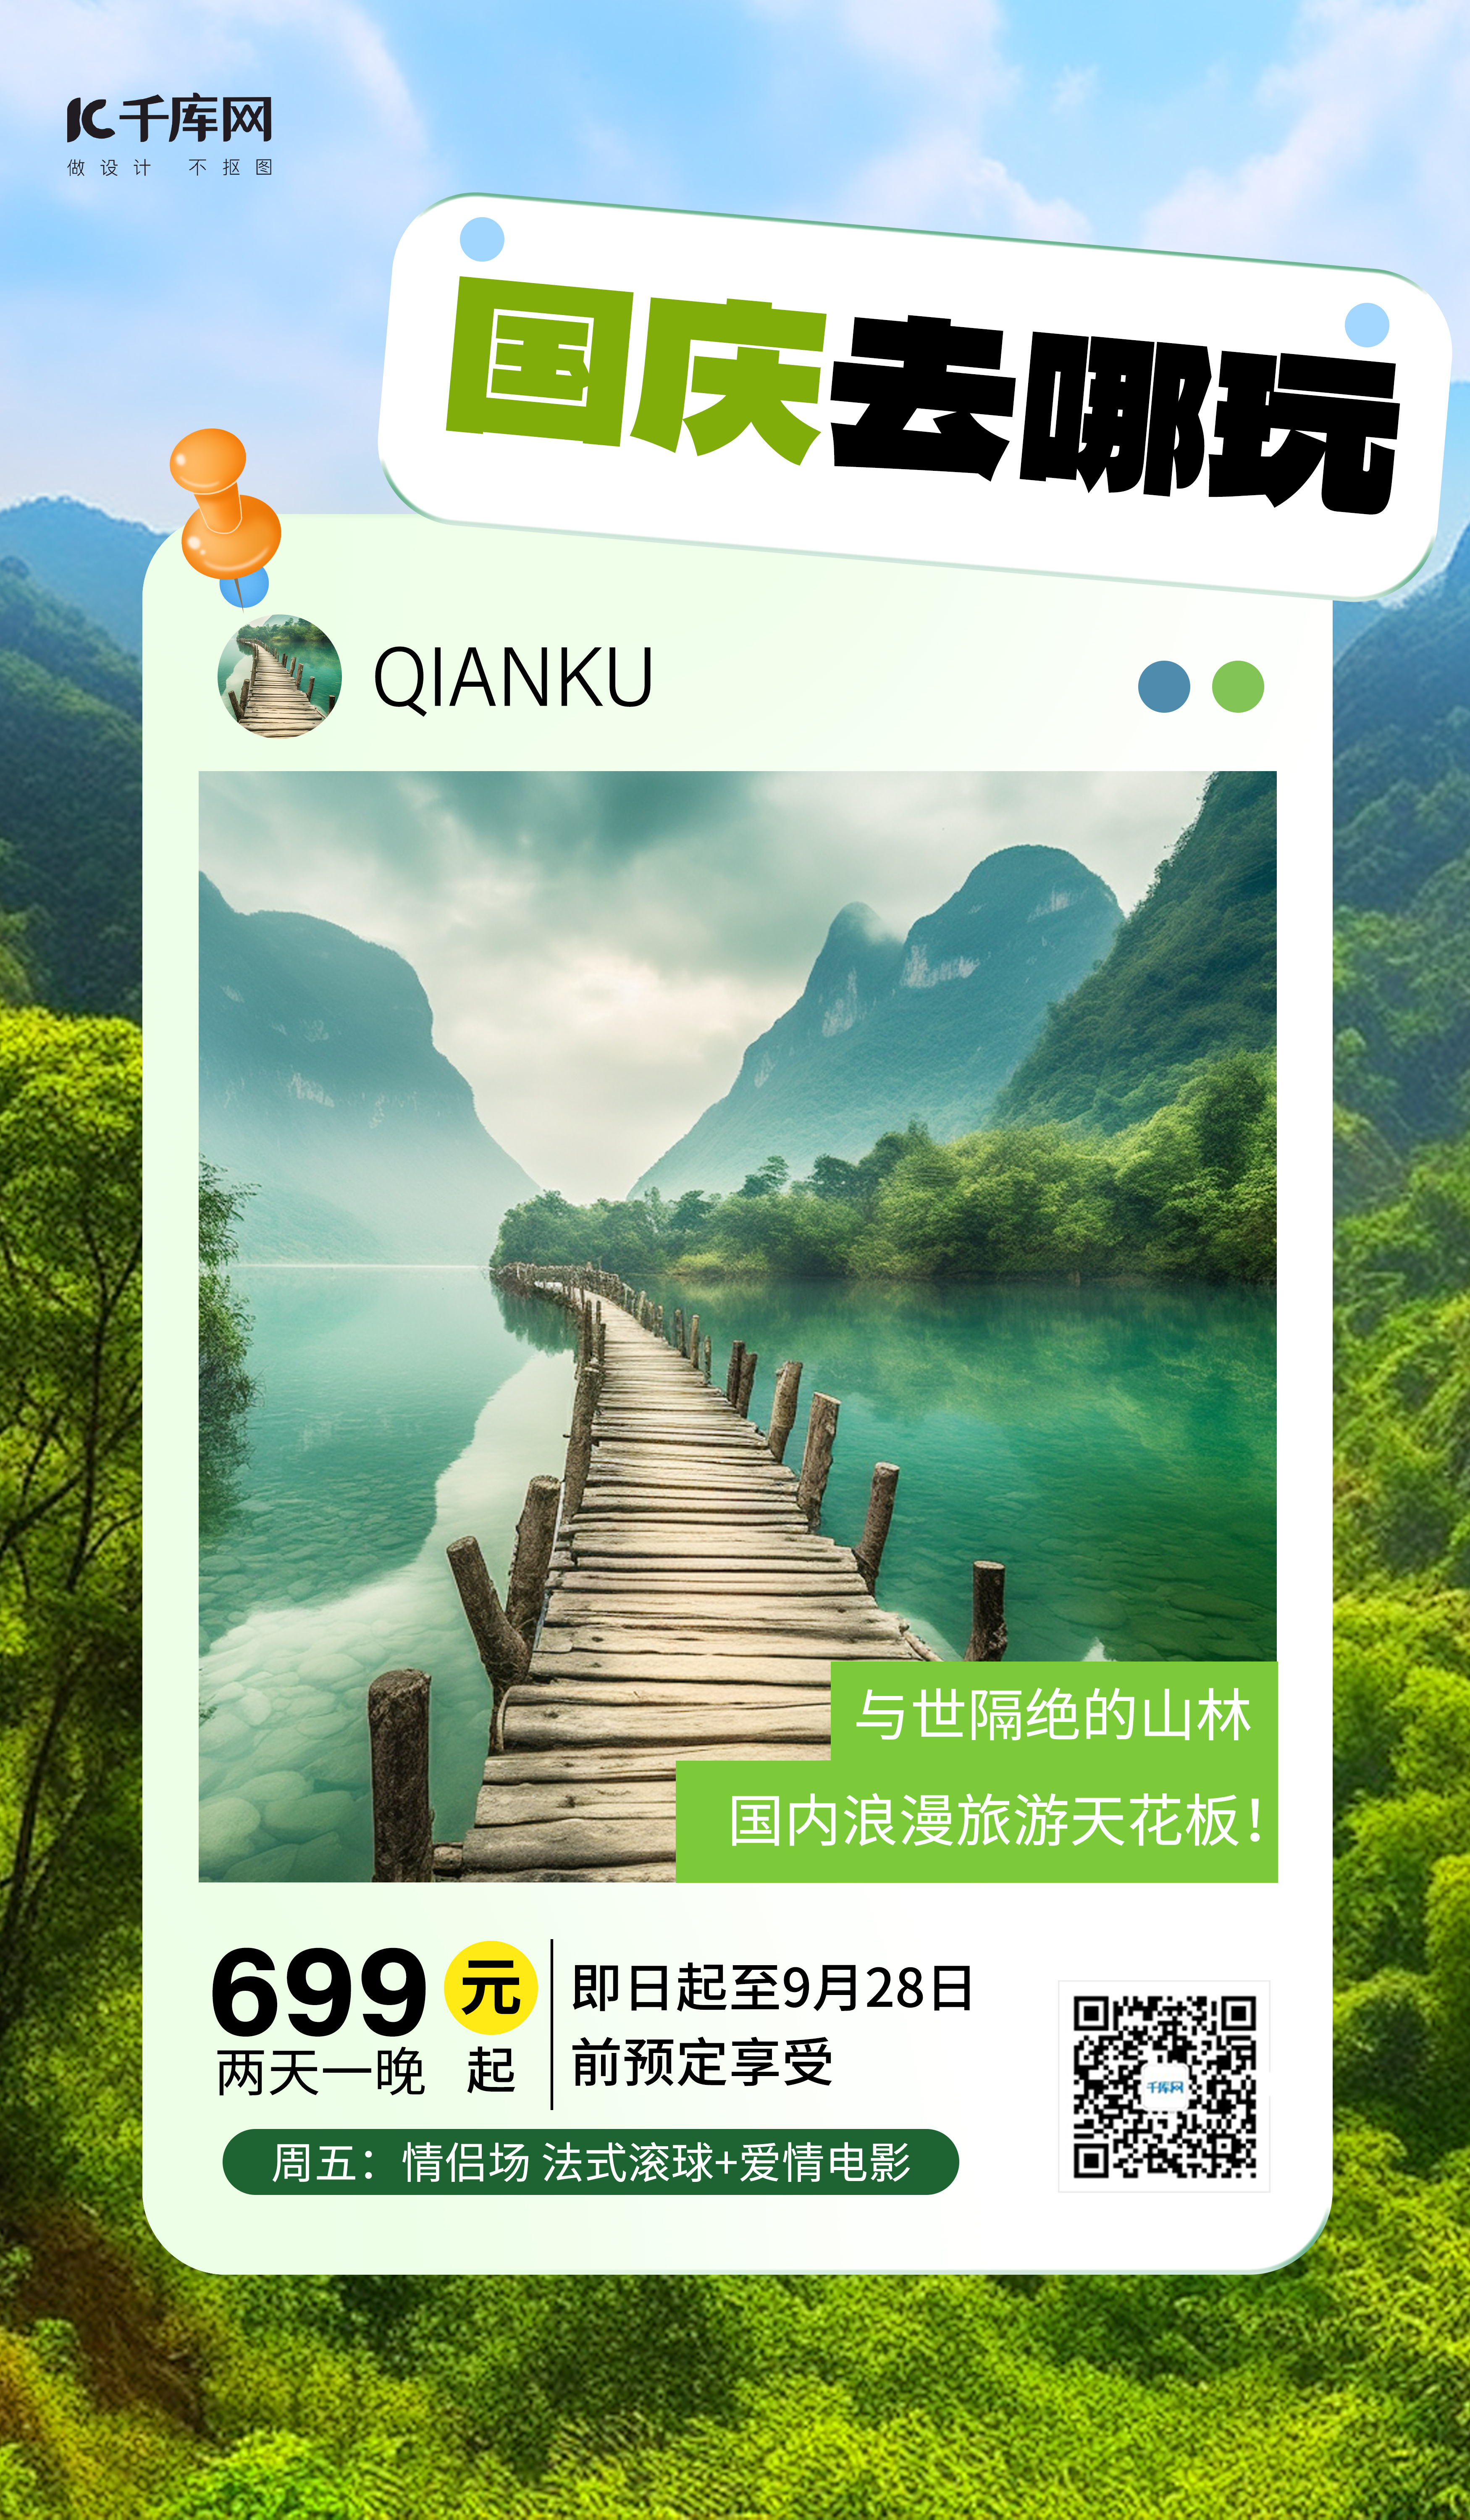 国庆出游景点景区绿色摄影风AI广告宣传海报图片